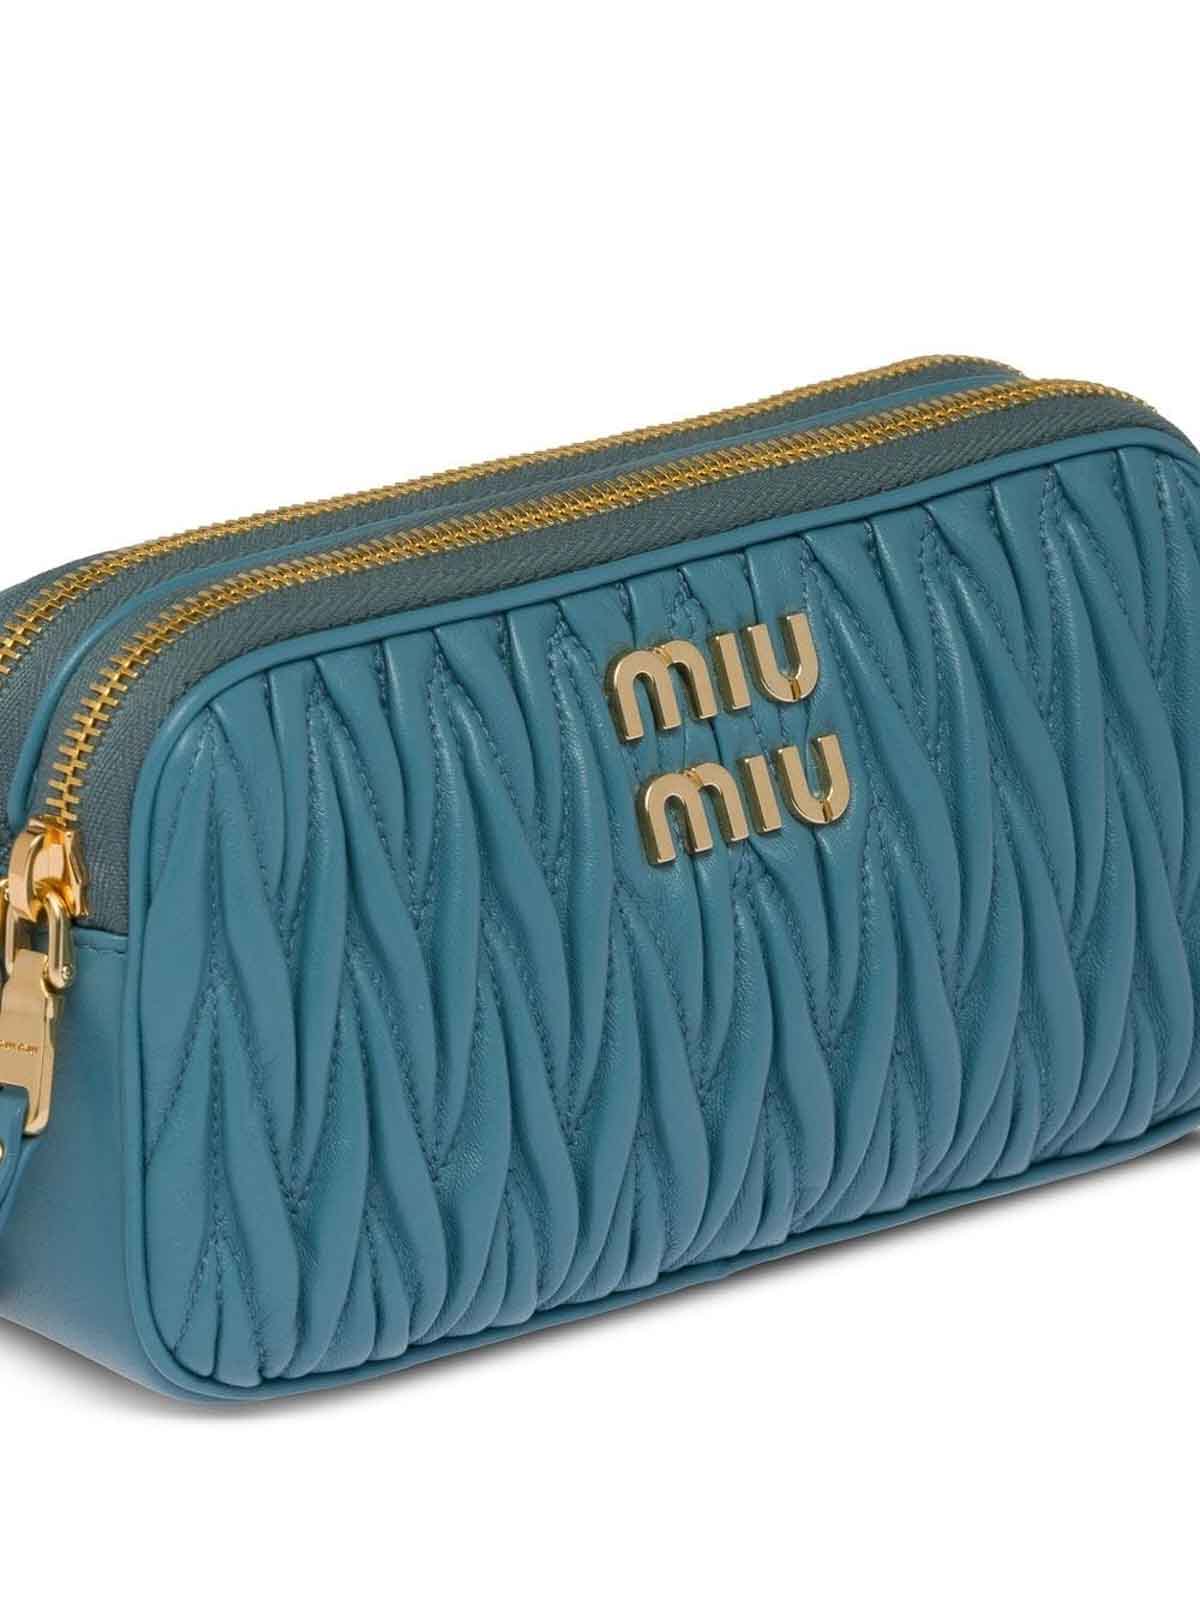 Shop Miu Miu Matelass Nappa Leather Mini Bag In Blue